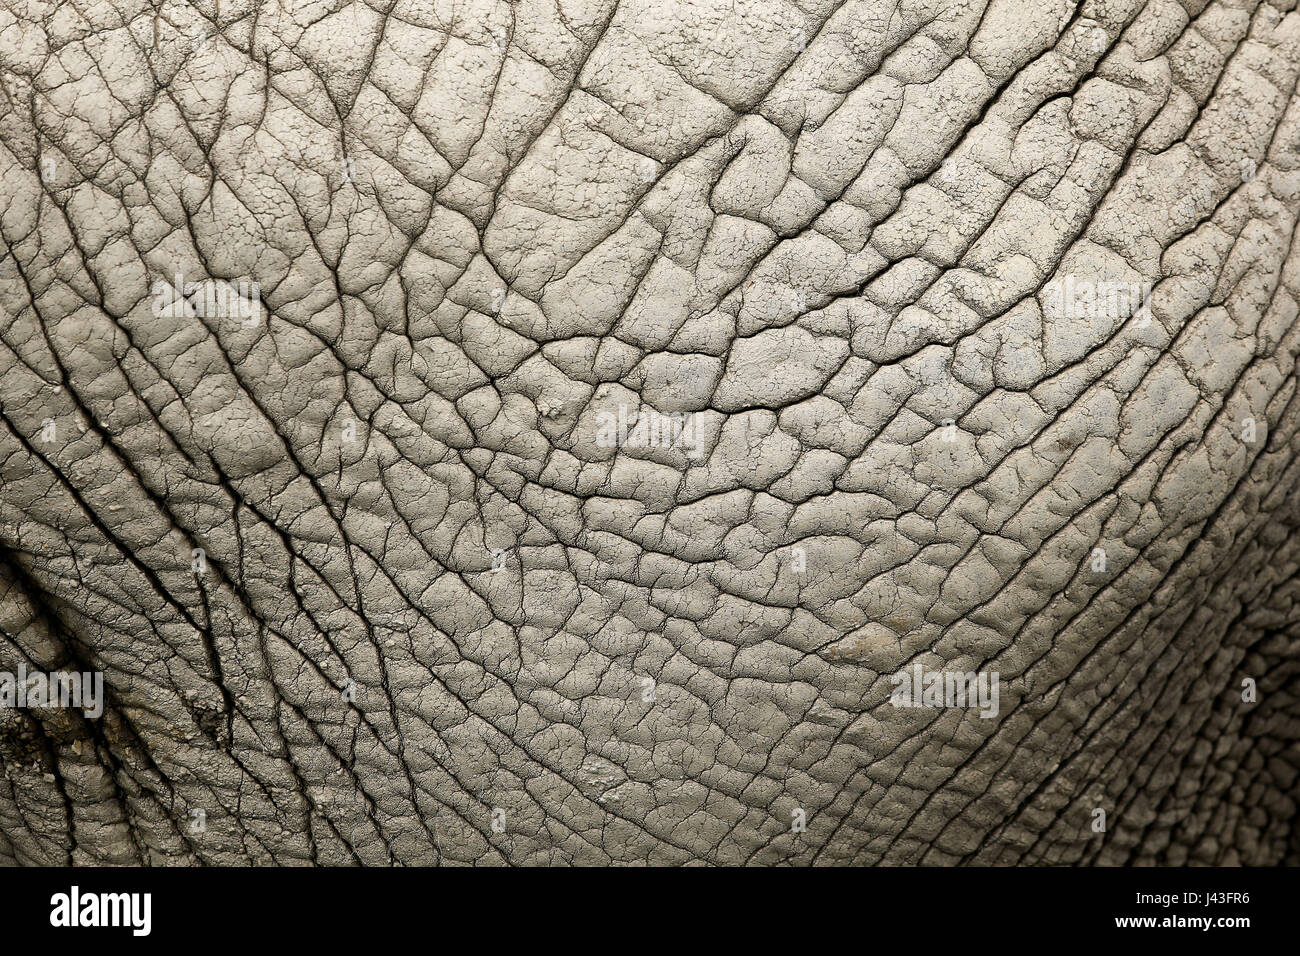 Close-up della pelle rugosa di un elefante africano (Loxodonta africana) rivelando dettagli astratta, modelli e texture Foto Stock